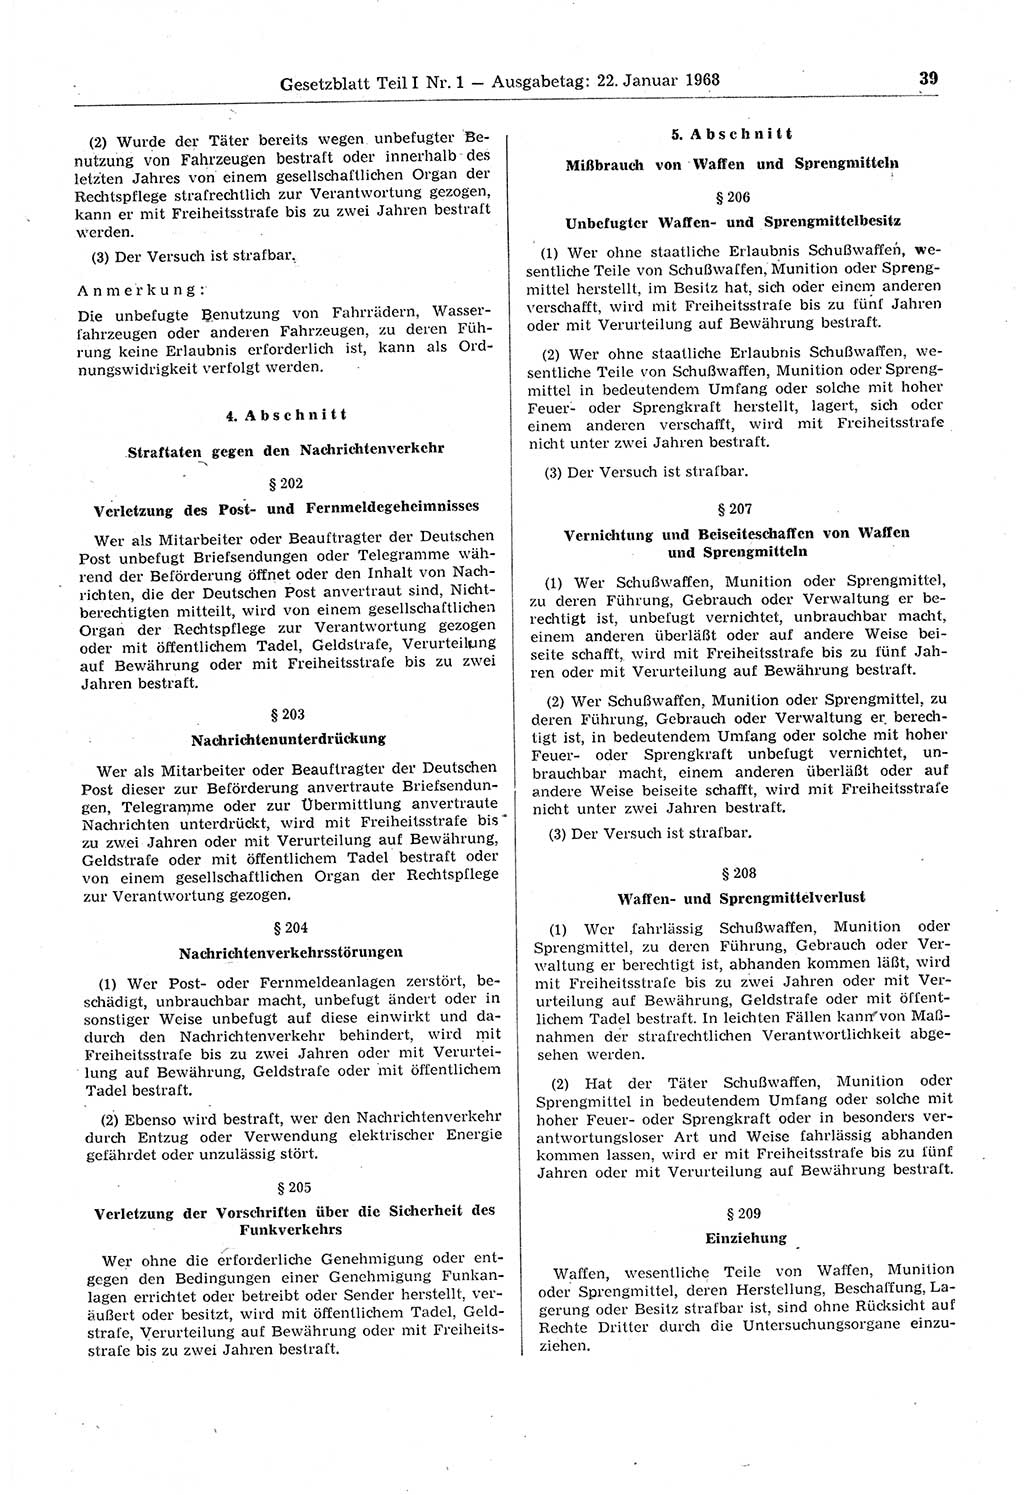 Gesetzblatt (GBl.) der Deutschen Demokratischen Republik (DDR) Teil Ⅰ 1968, Seite 39 (GBl. DDR Ⅰ 1968, S. 39)